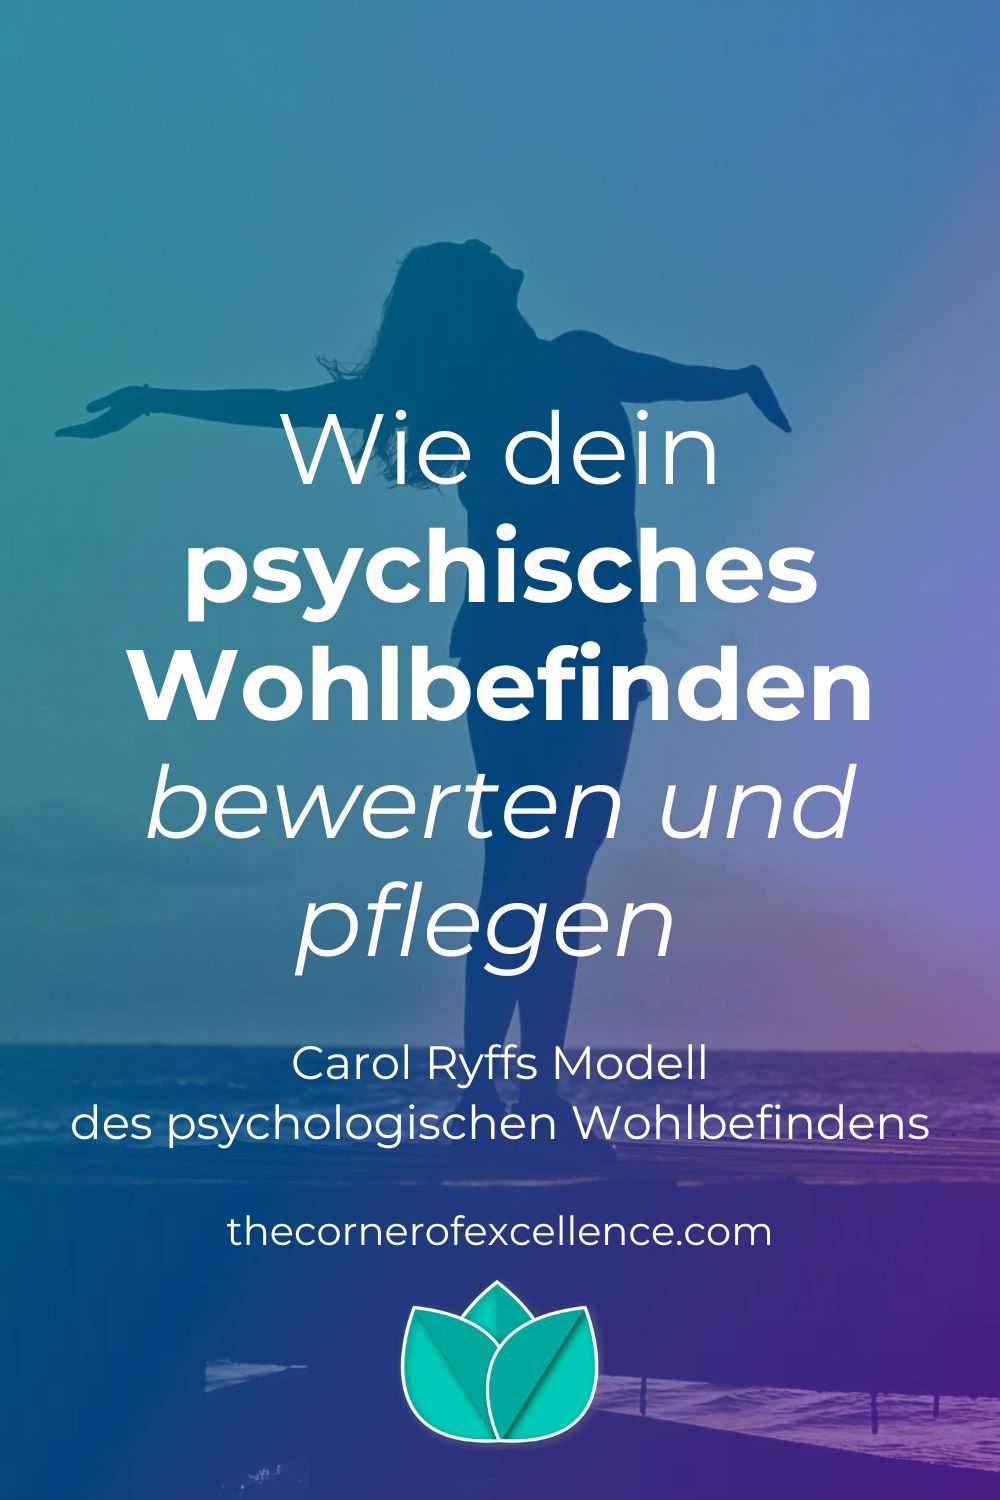 Psychisches Wohlbefinden Carol Ryff Modell psychologisches Wohlbefinden Frau Sonnenuntergang